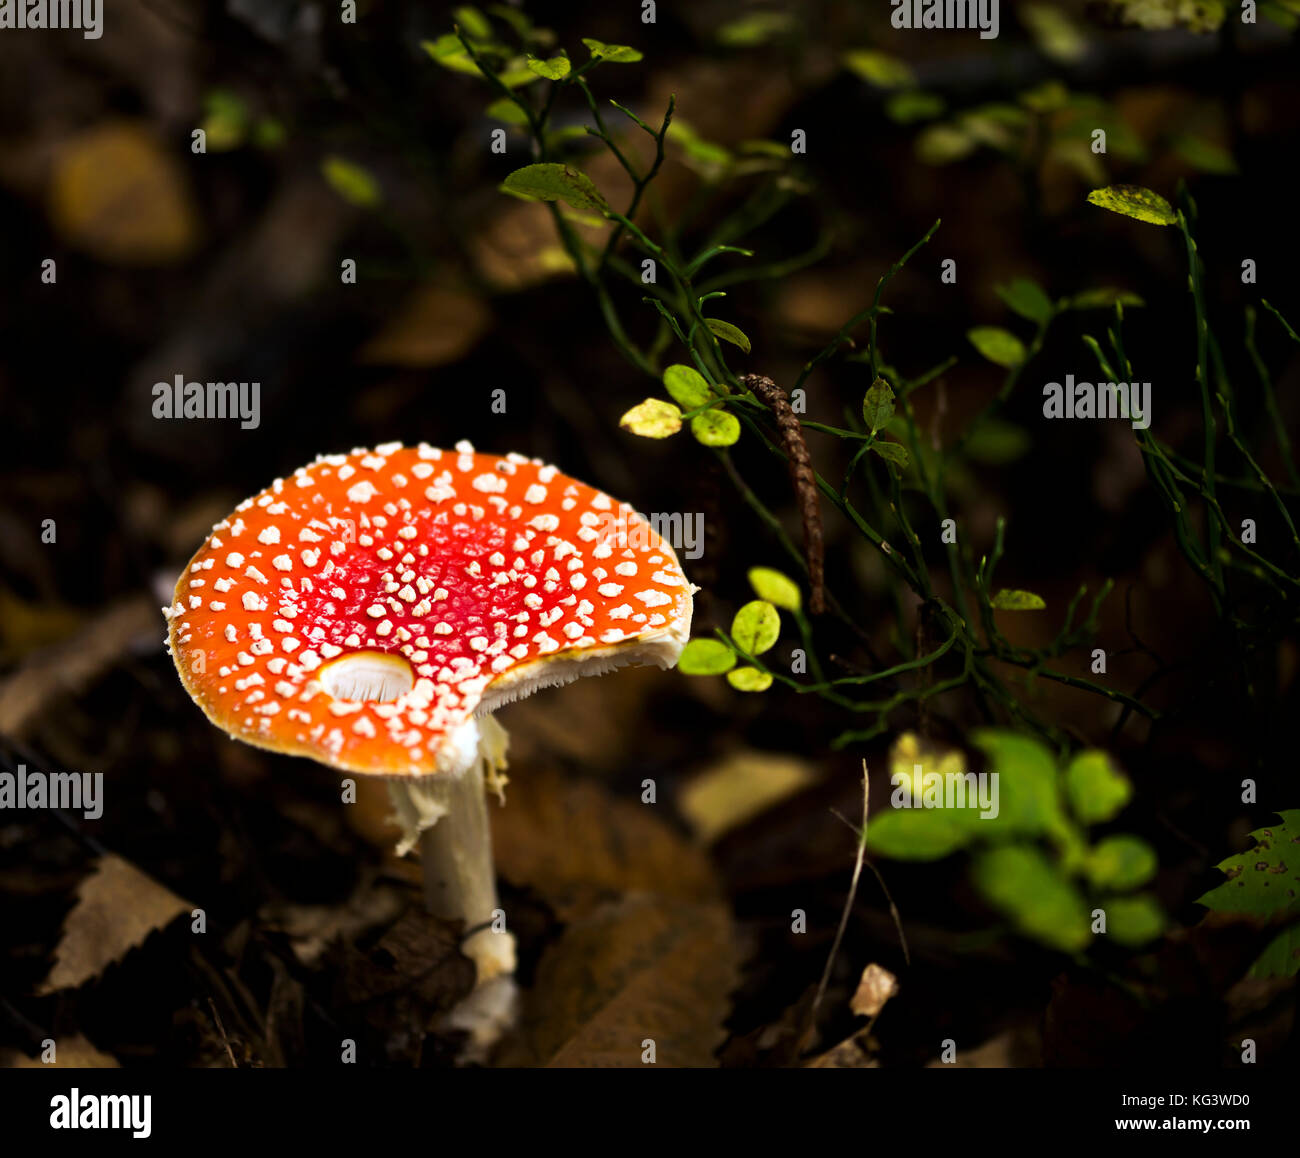 Amanita muscaria fungo che cresce sui terreni forestali. Foto Stock